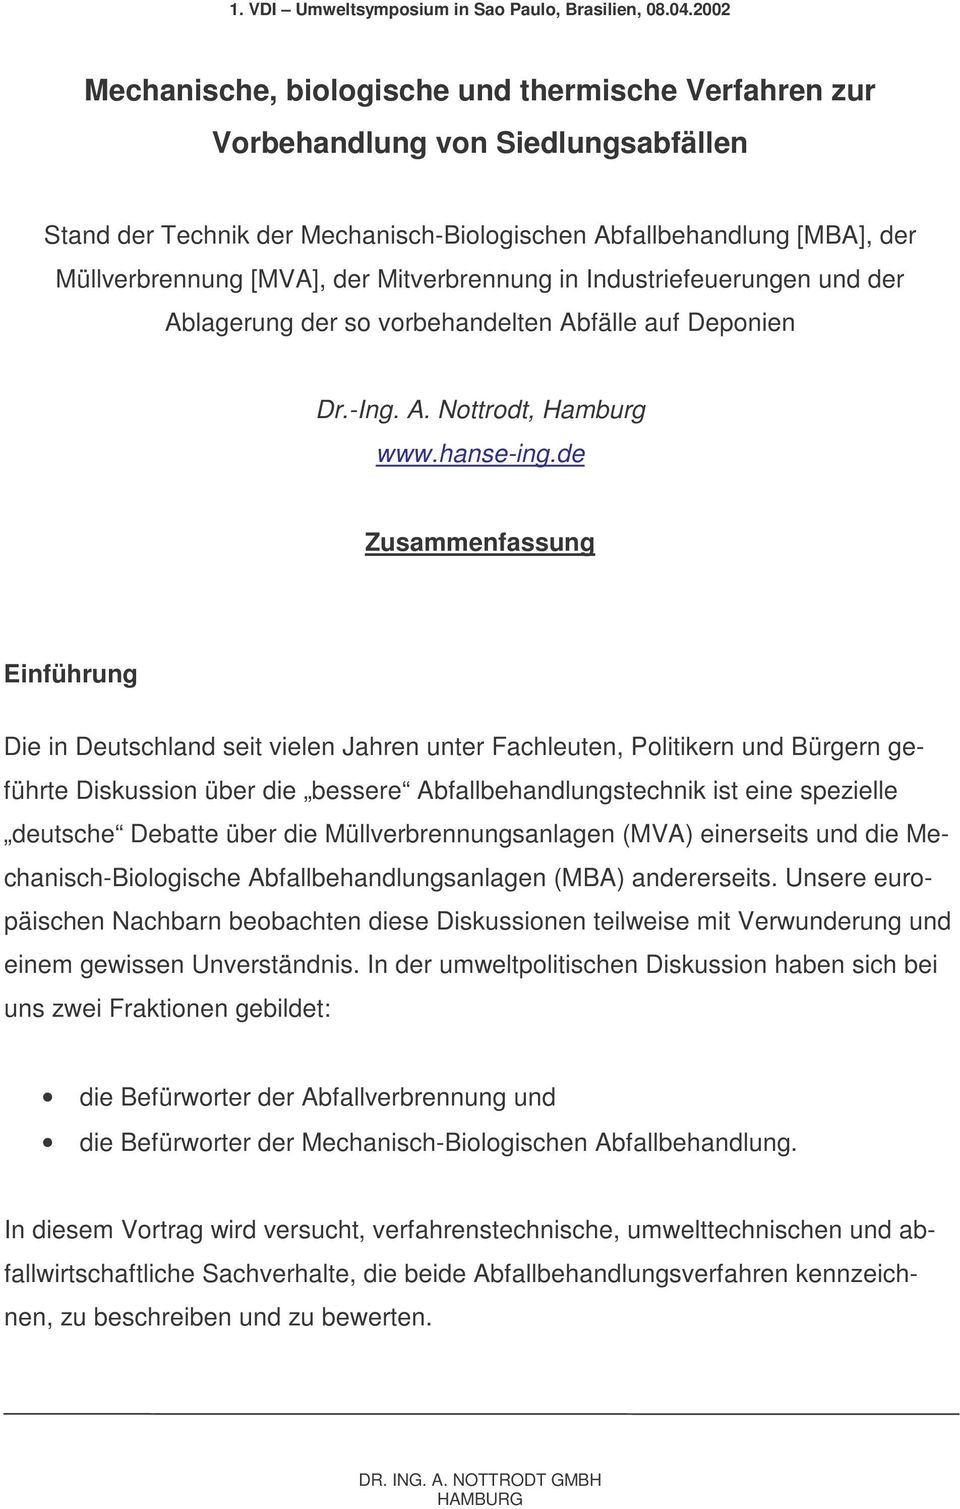 Mitverbrennung in Industriefeuerungen und der Ablagerung der so vorbehandelten Abfälle auf Deponien Dr.-Ing. A. Nottrodt, Hamburg www.hanse-ing.